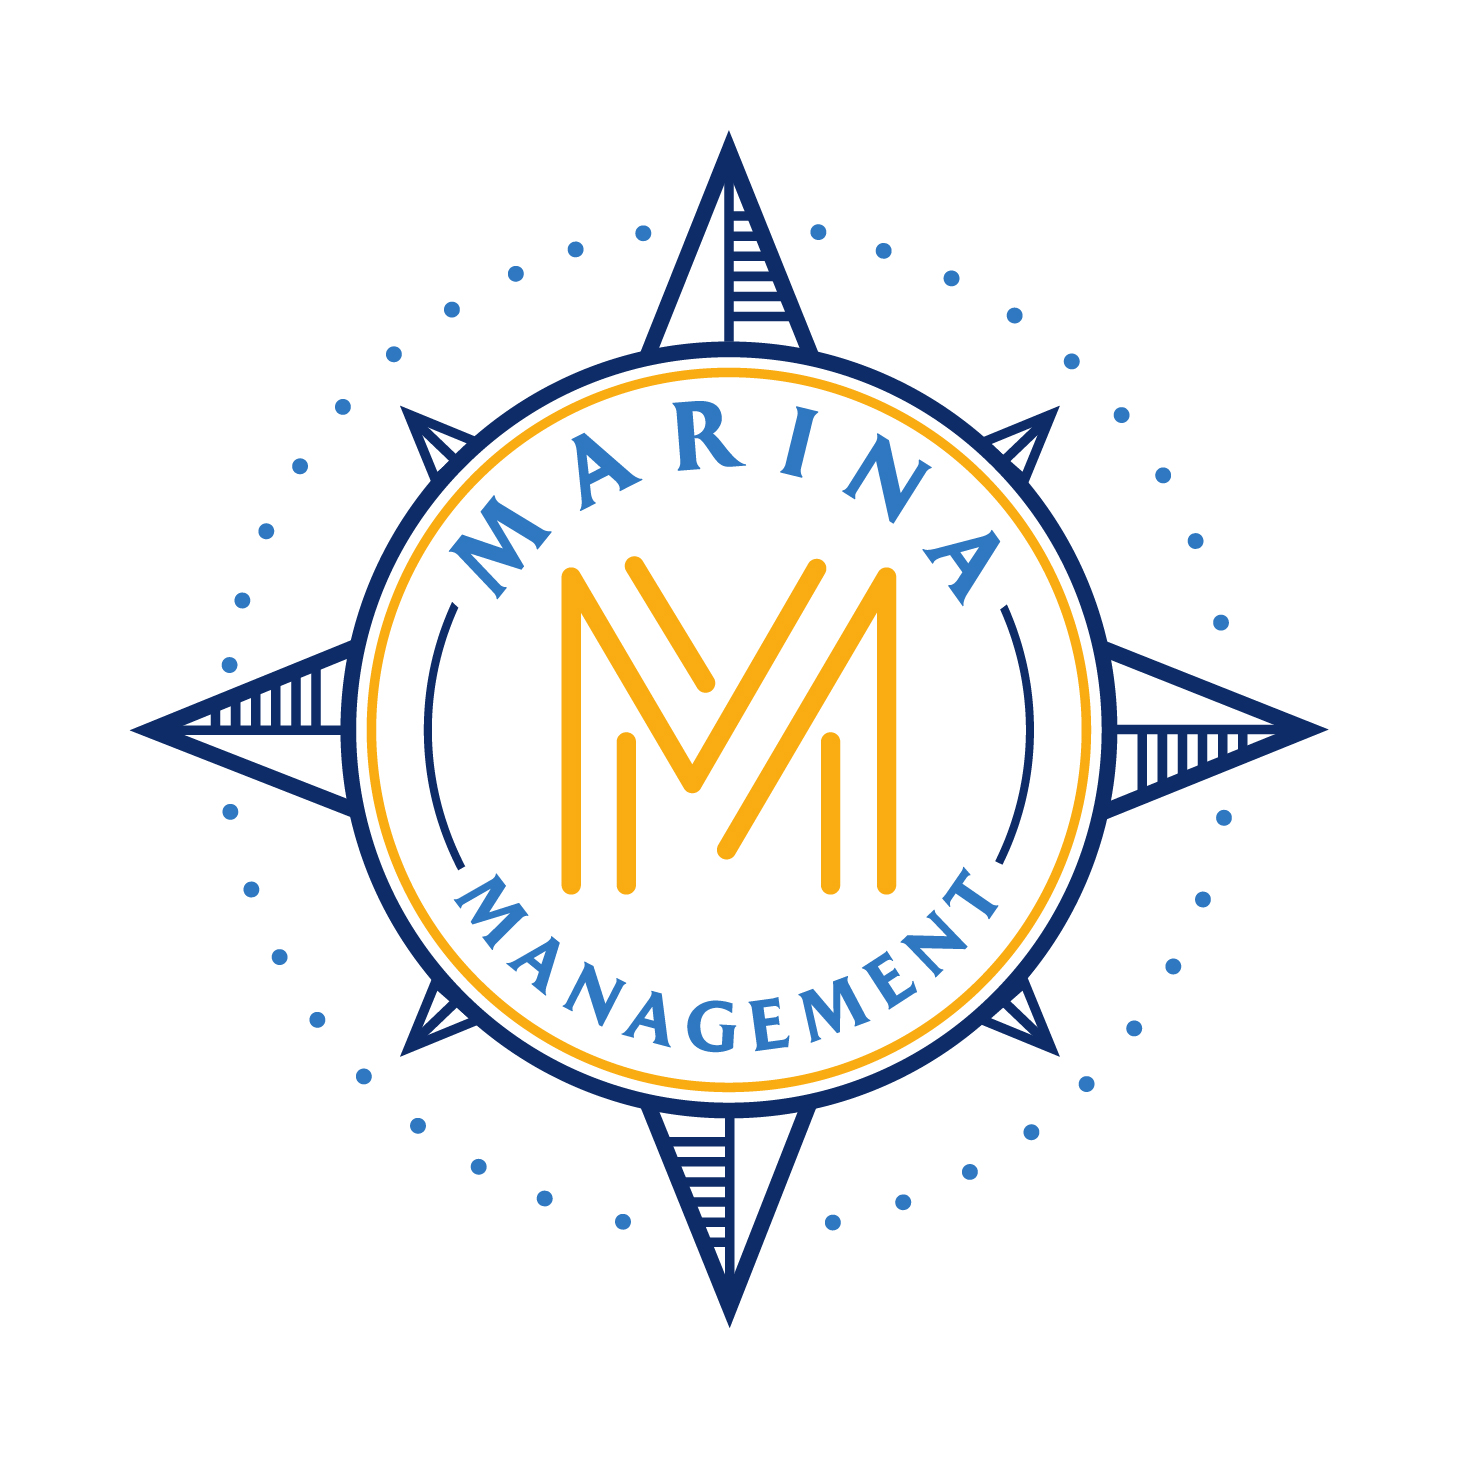 Marina Management logo